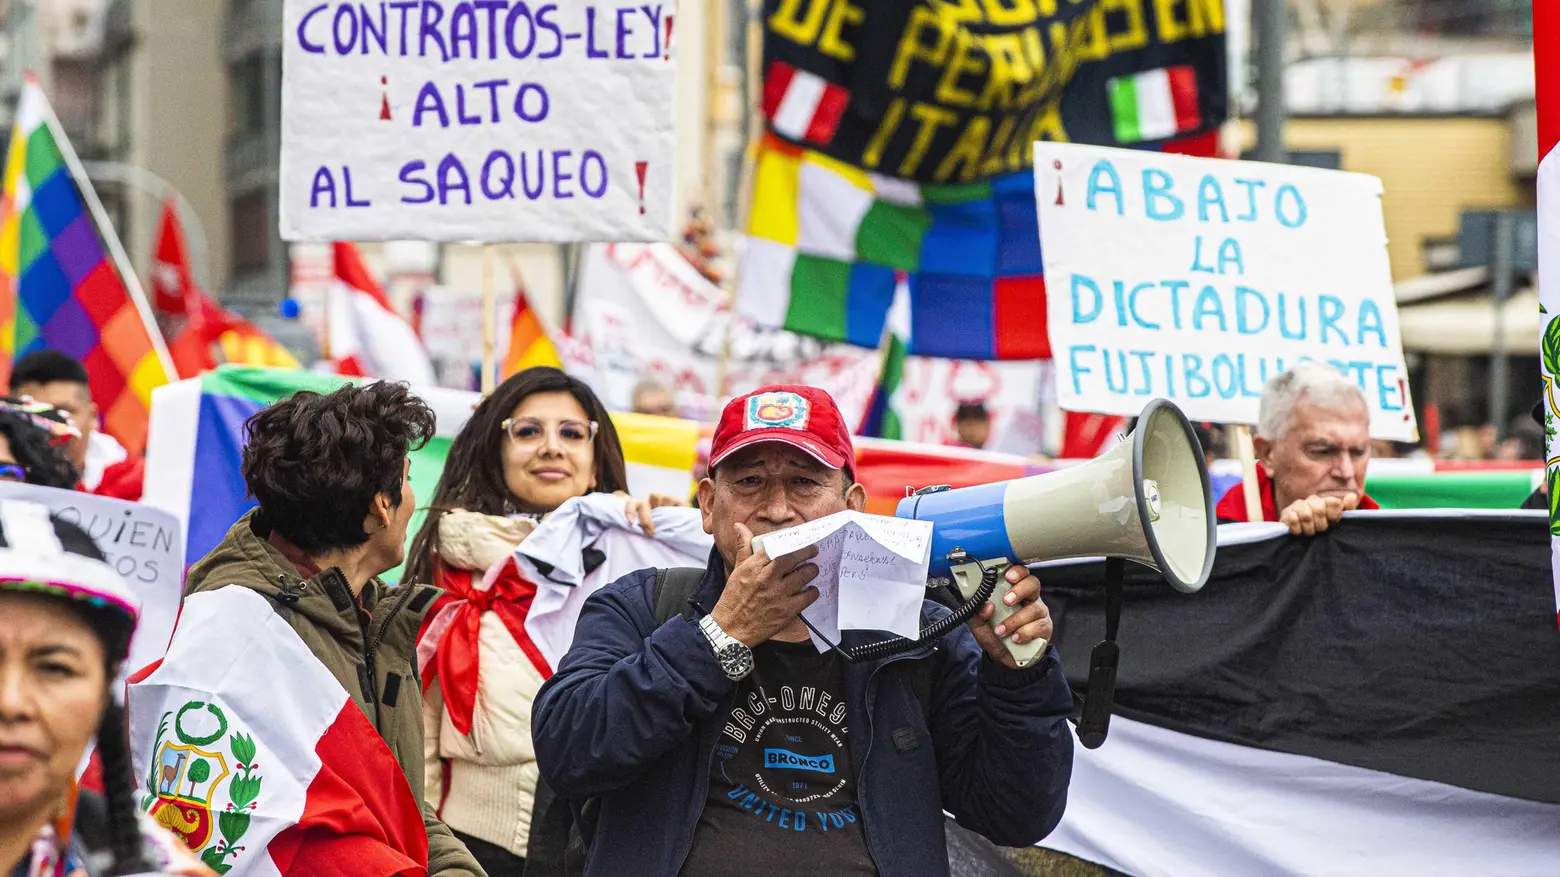 Peruviani, corteo contro la Boluarte